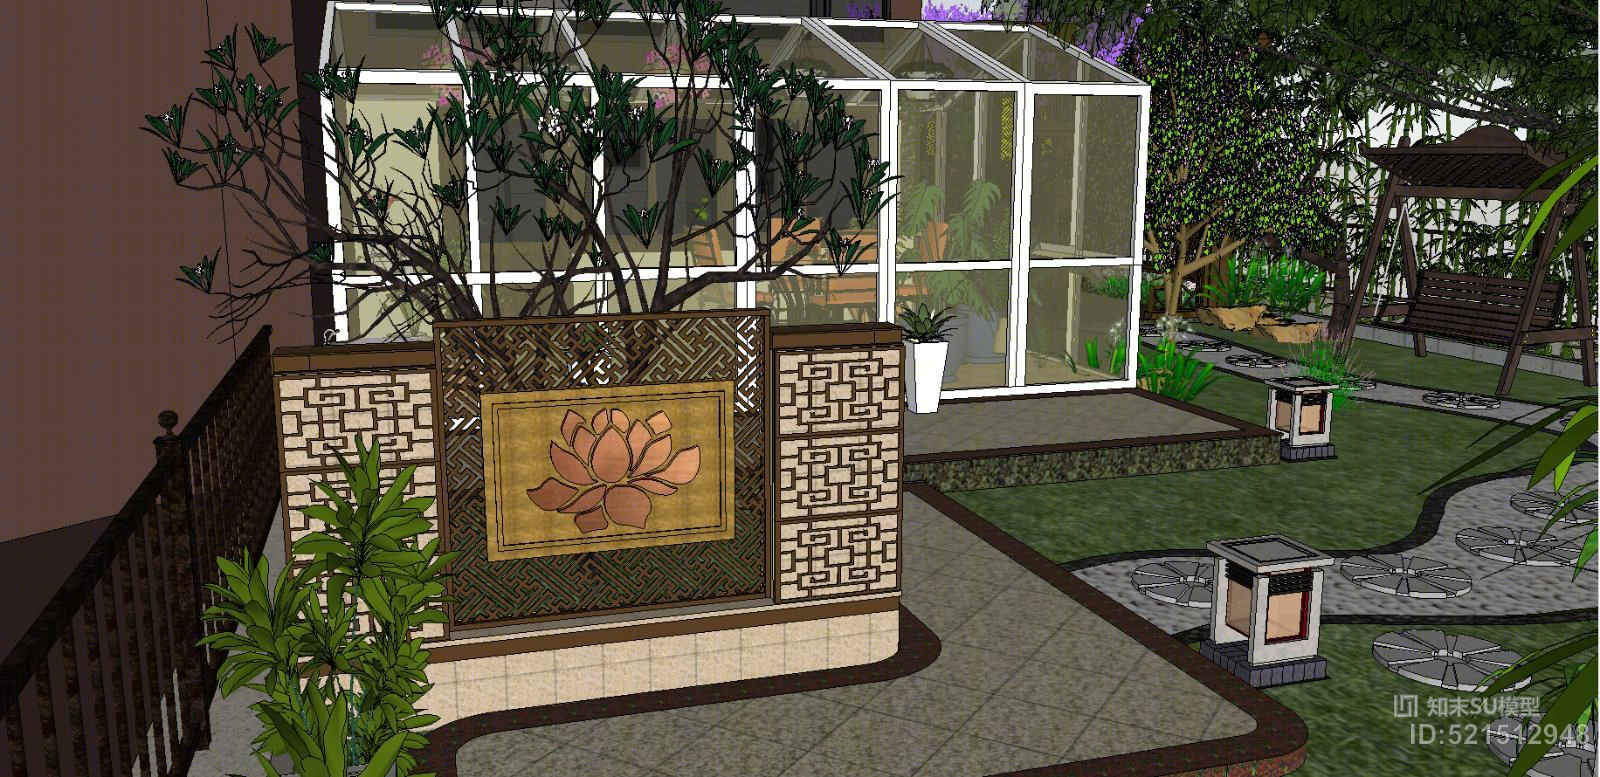 中式庭院设计背景墙水池花架植物造景阳光房su模型 Id 知末su模型网